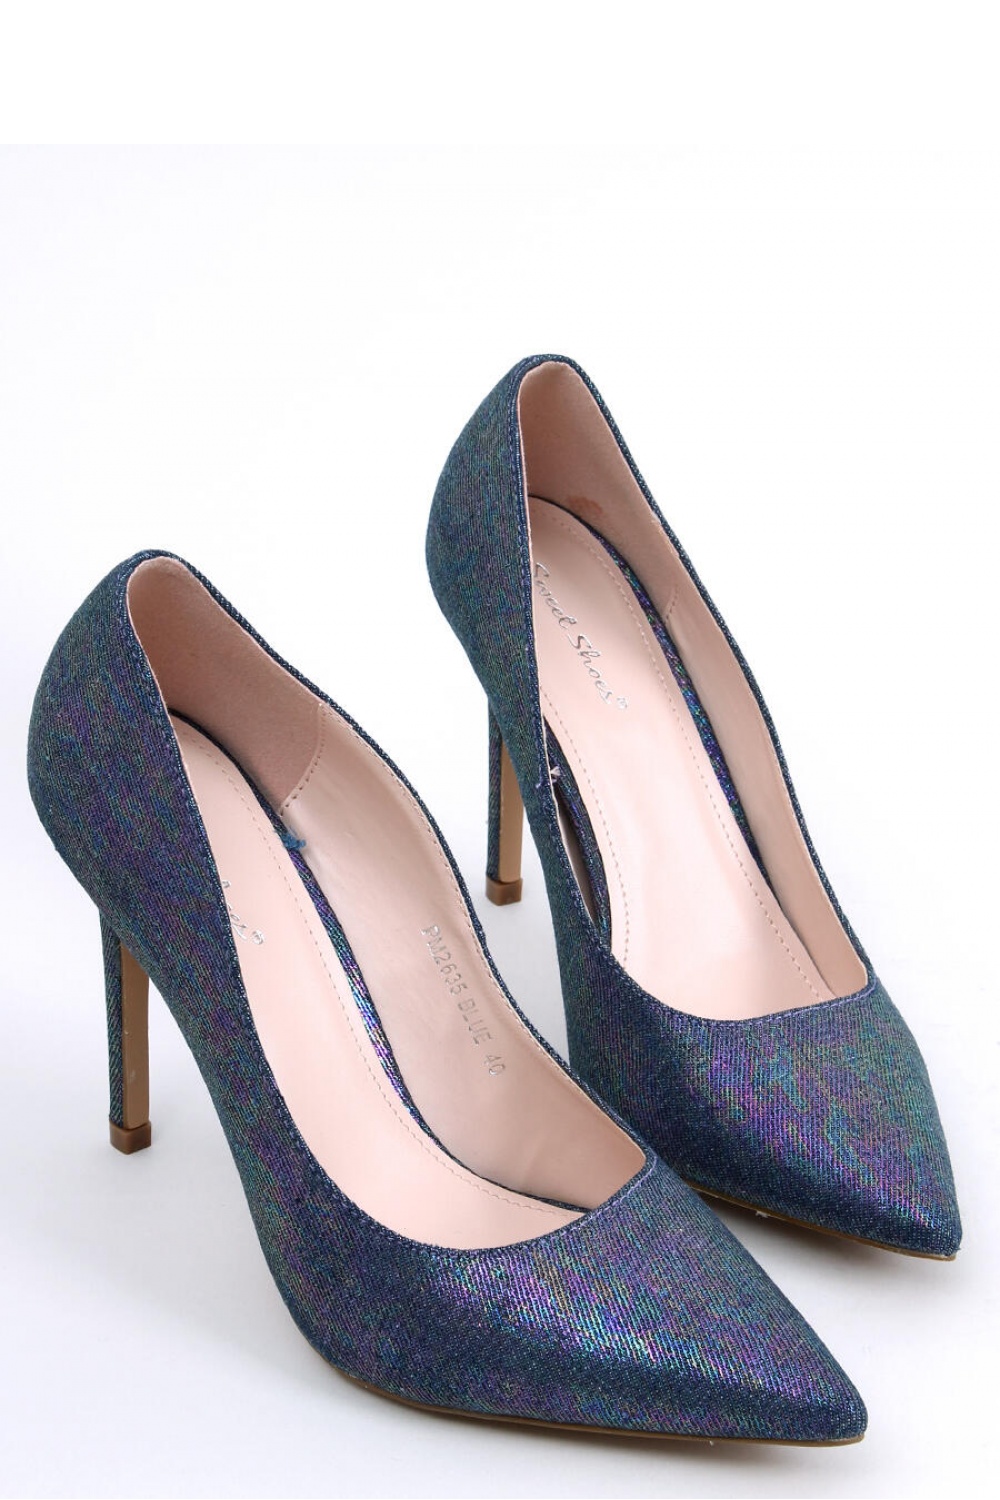 High heels model 174090 Inello